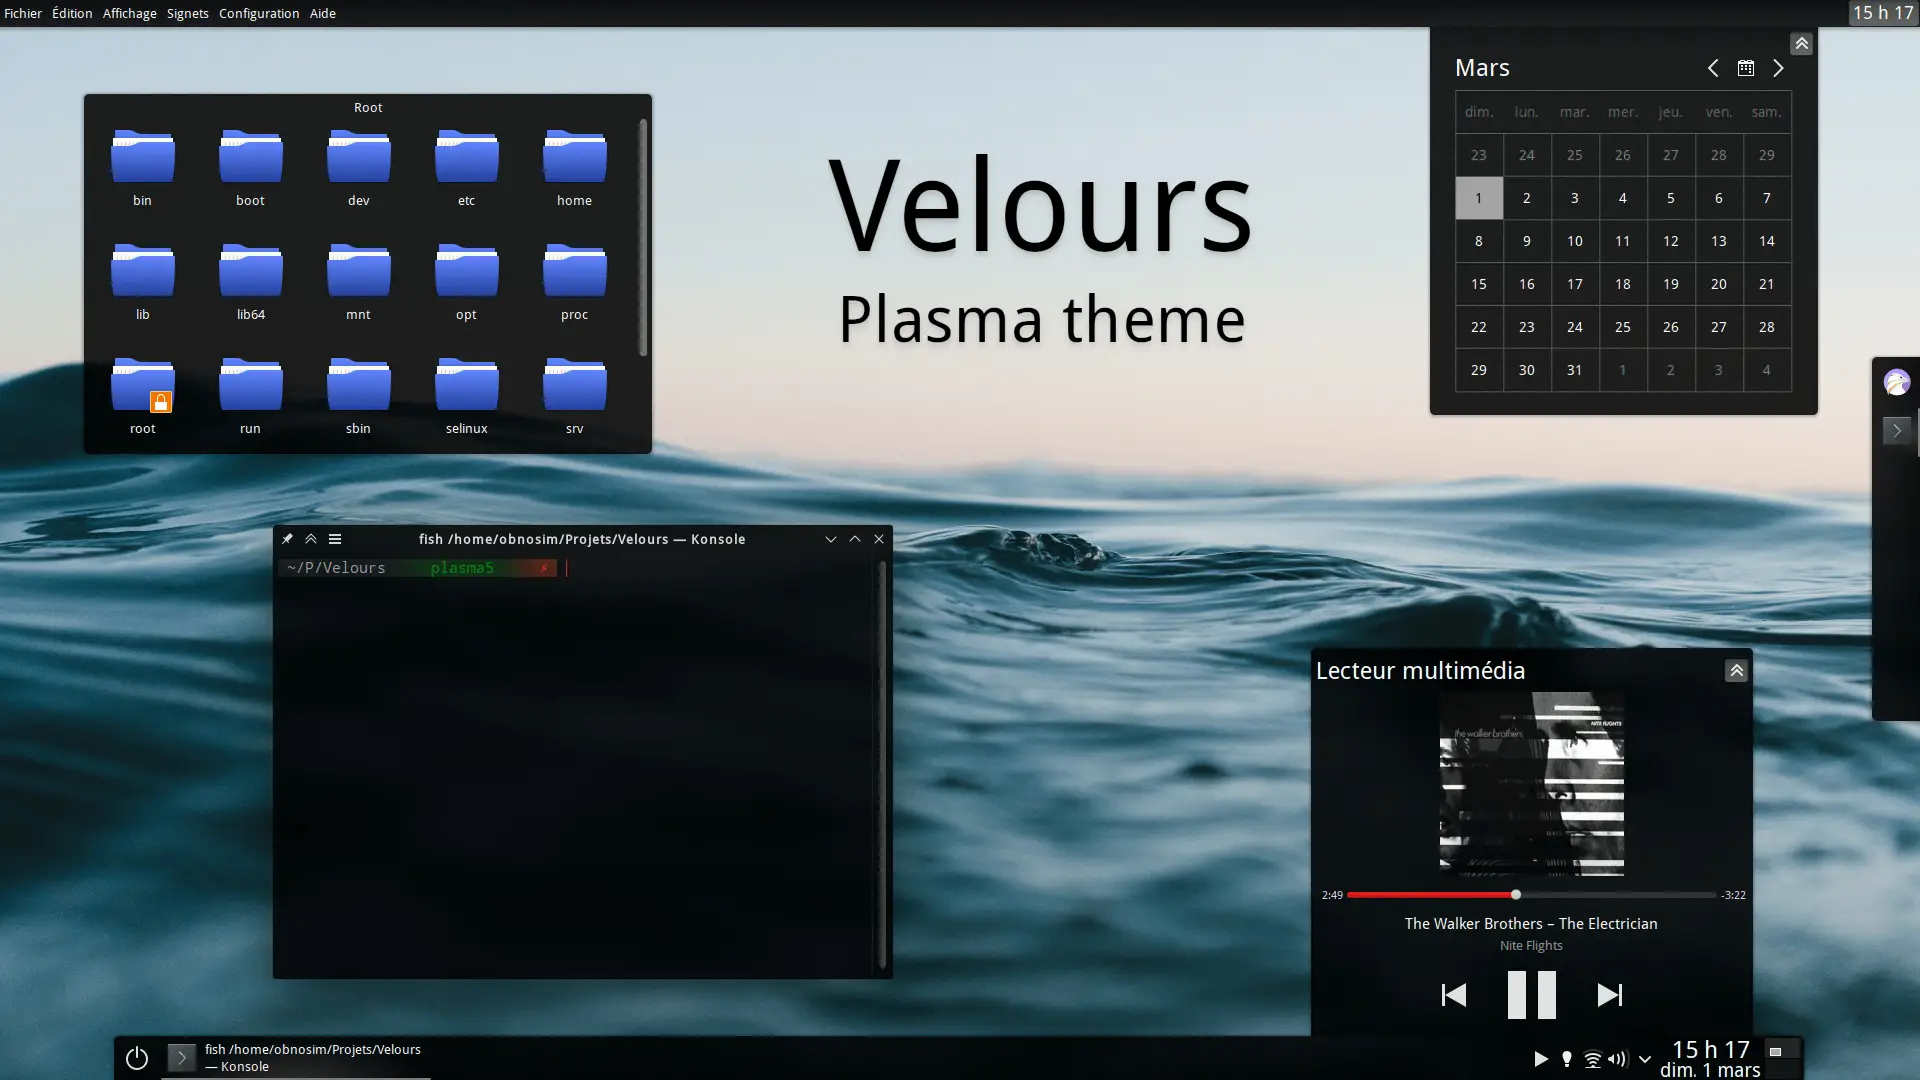 Velours KDE theme image from https://gitlab.com/obnosim/velours